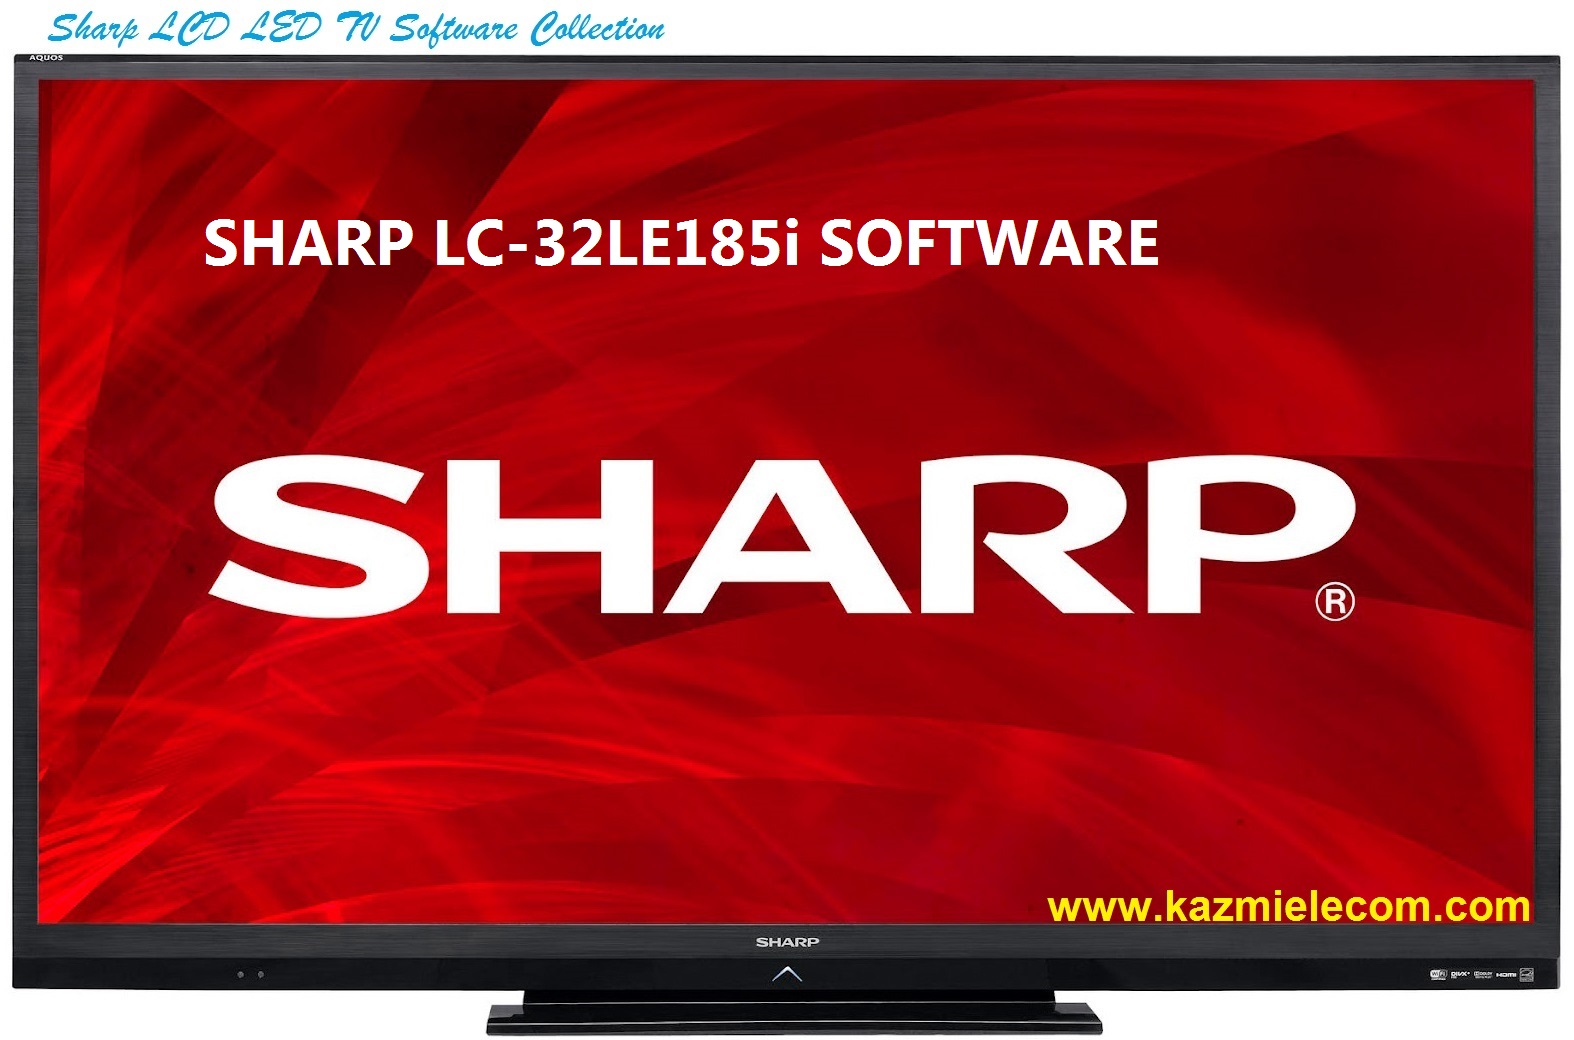 Sharp Lc-32Le185I